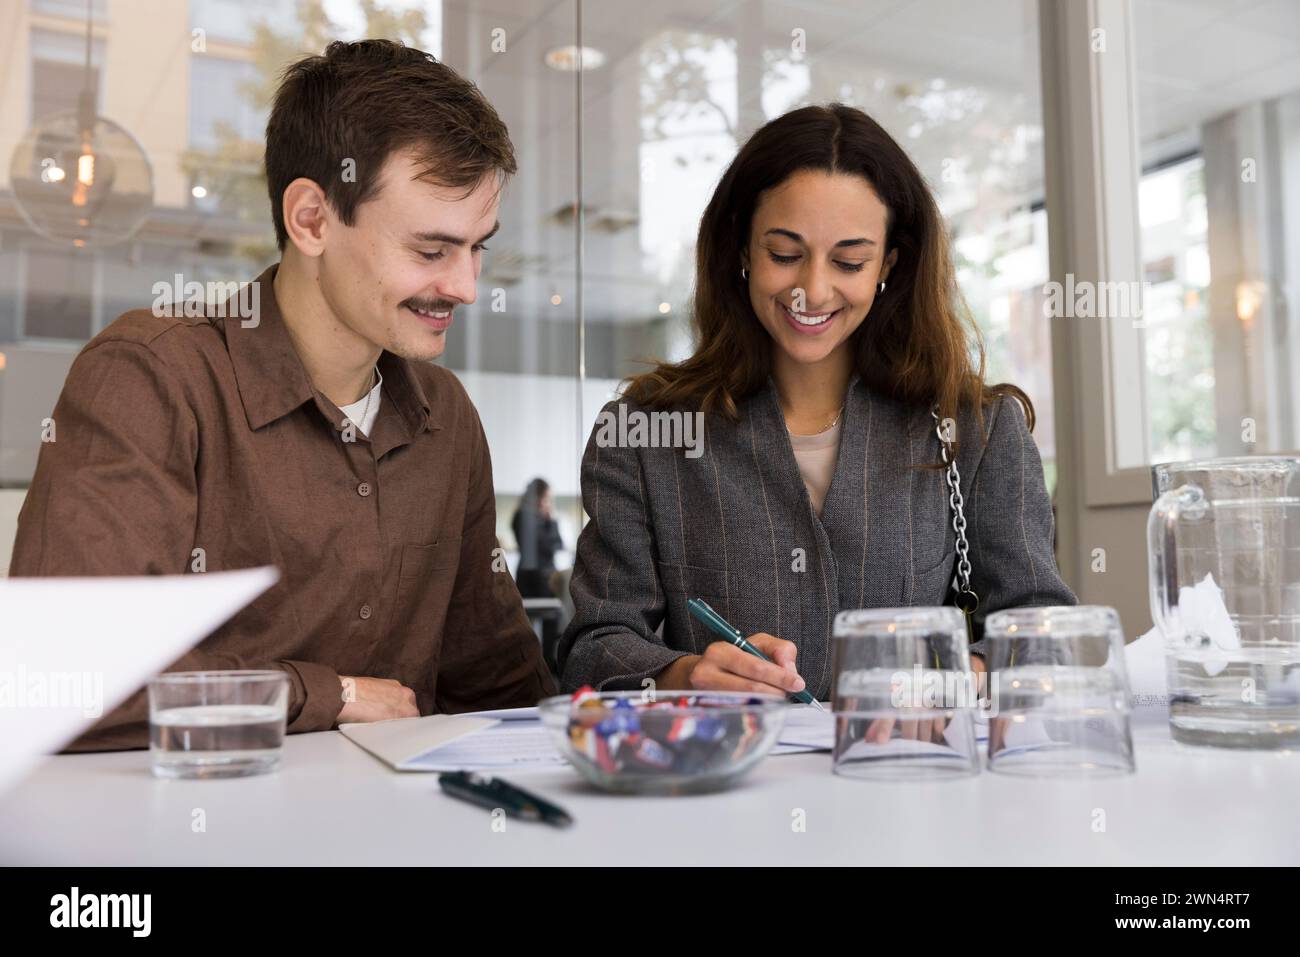 Uomo che guarda una donna sorridente che firma un accordo alla scrivania dell'ufficio immobiliare Foto Stock